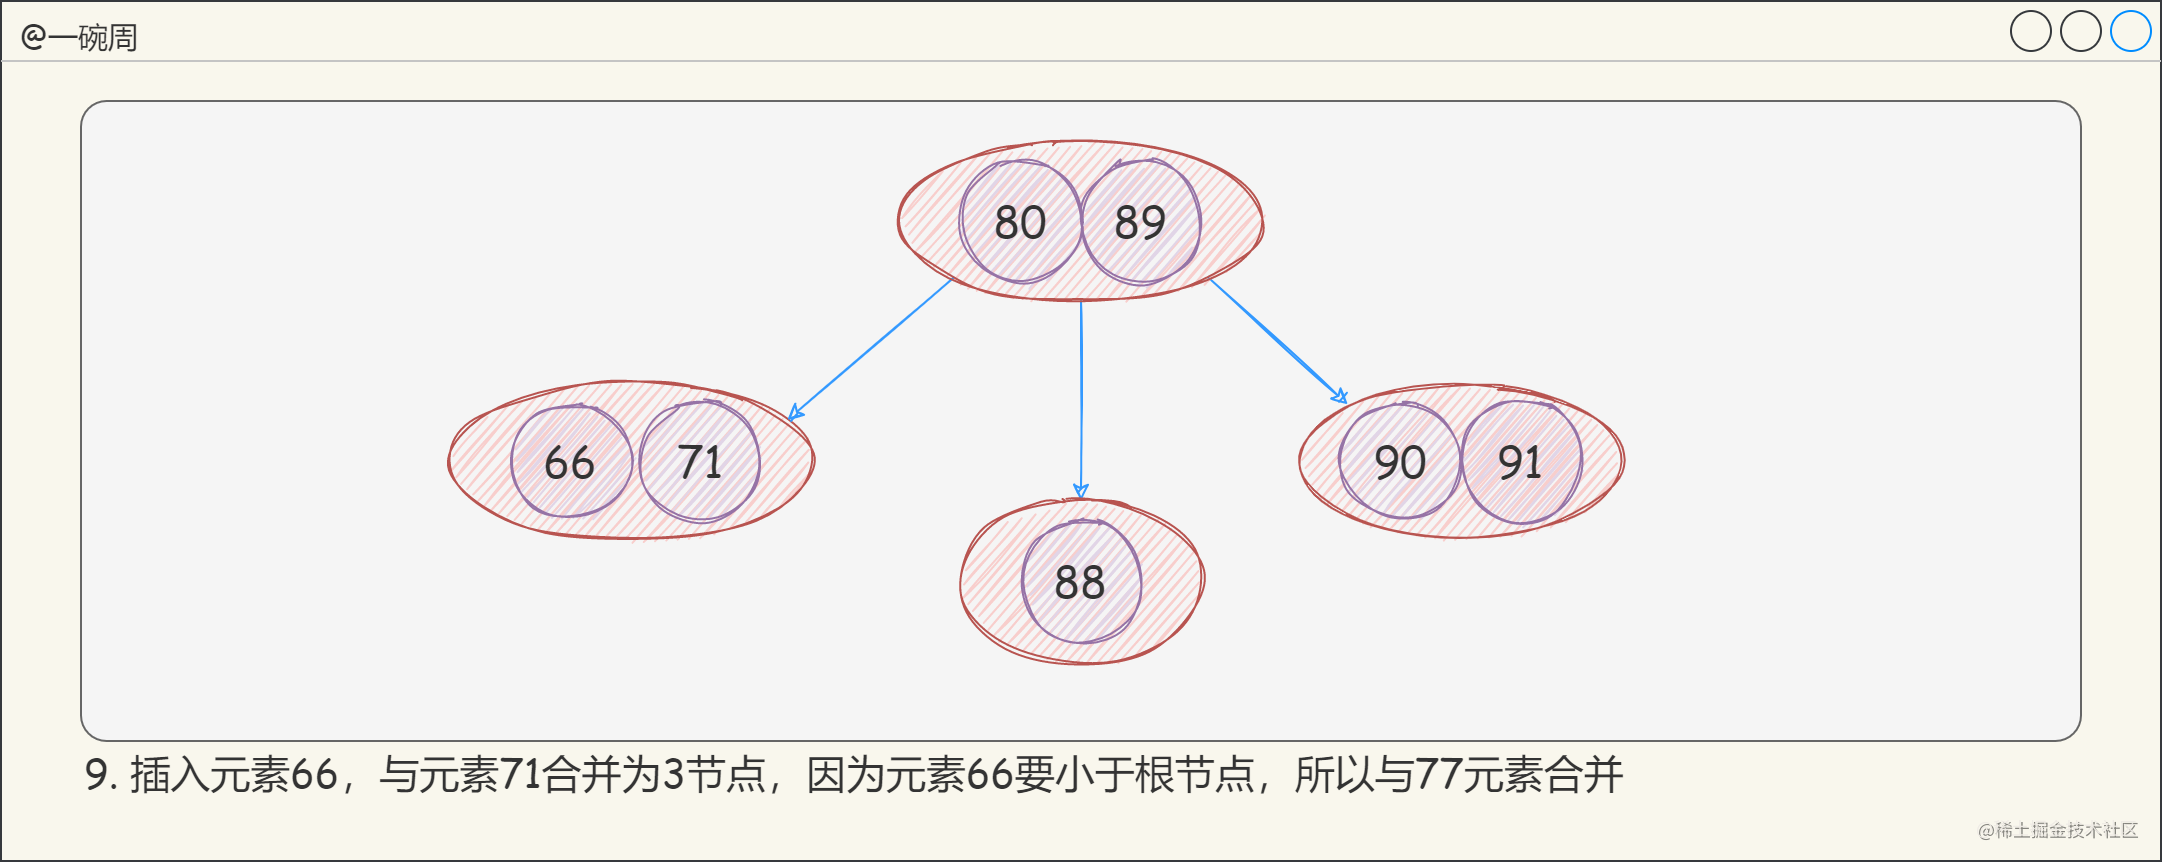 13_2-3-4樹的構建過程5_Yan-YjIe2t.png